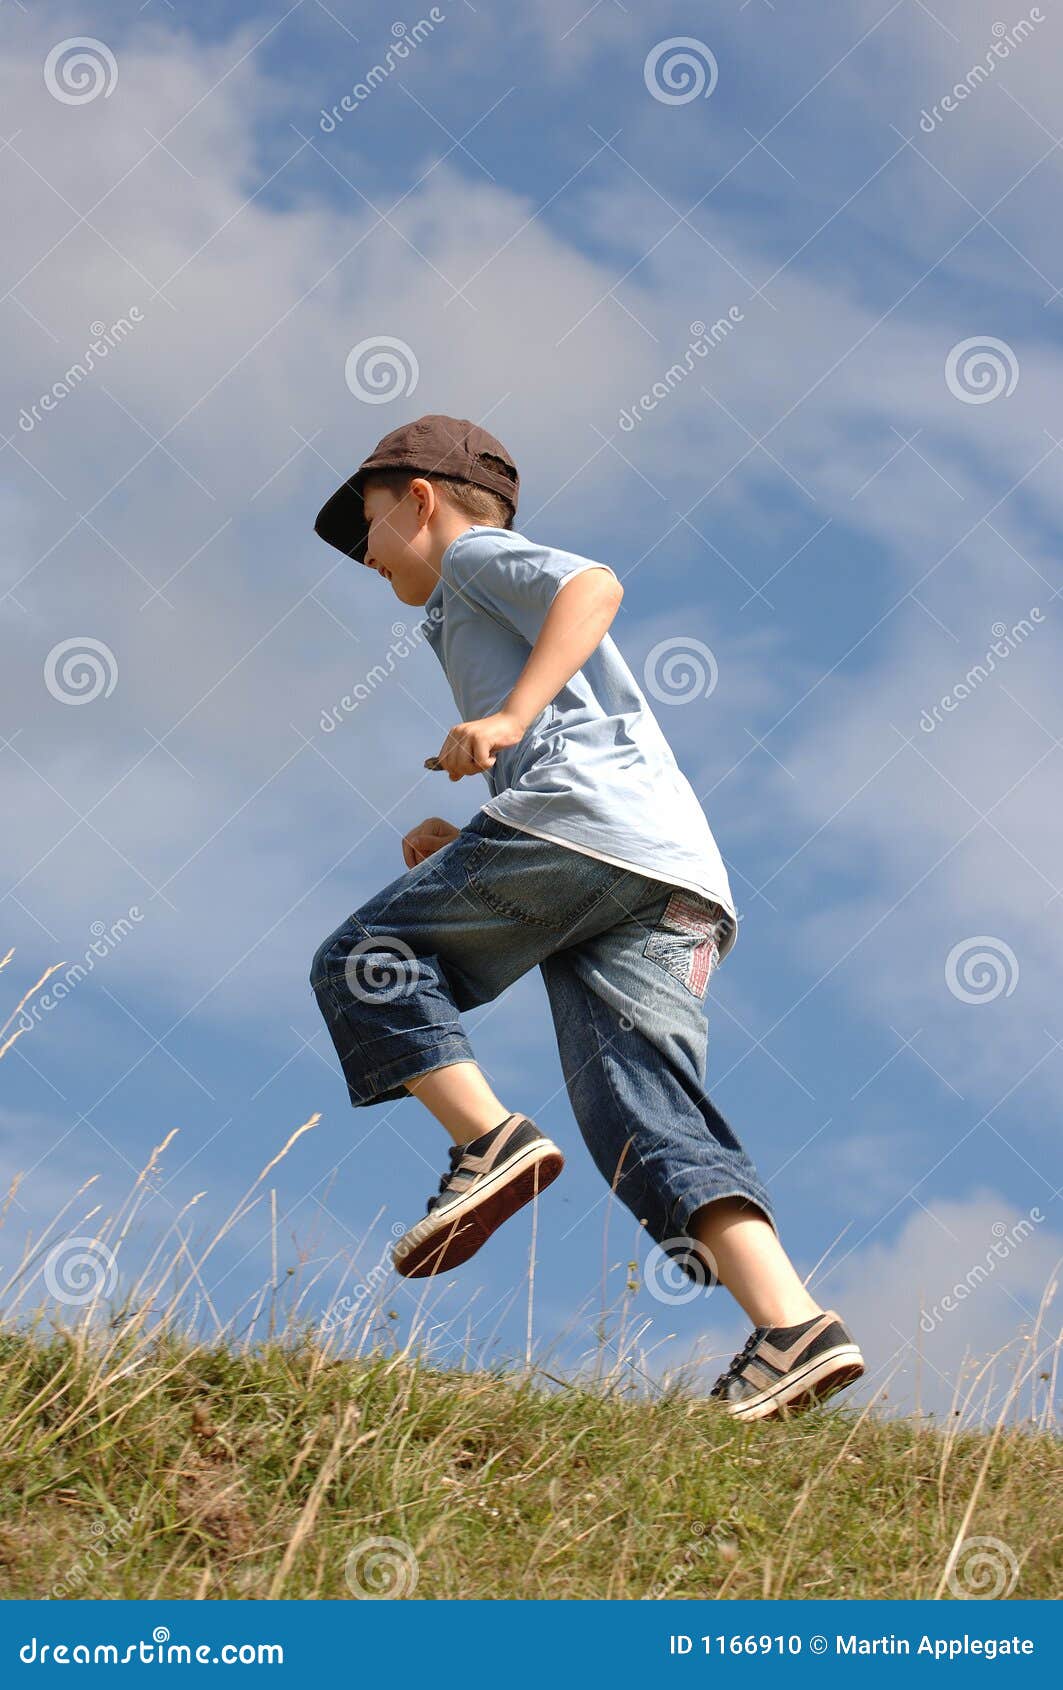 a boy running up a grass hill